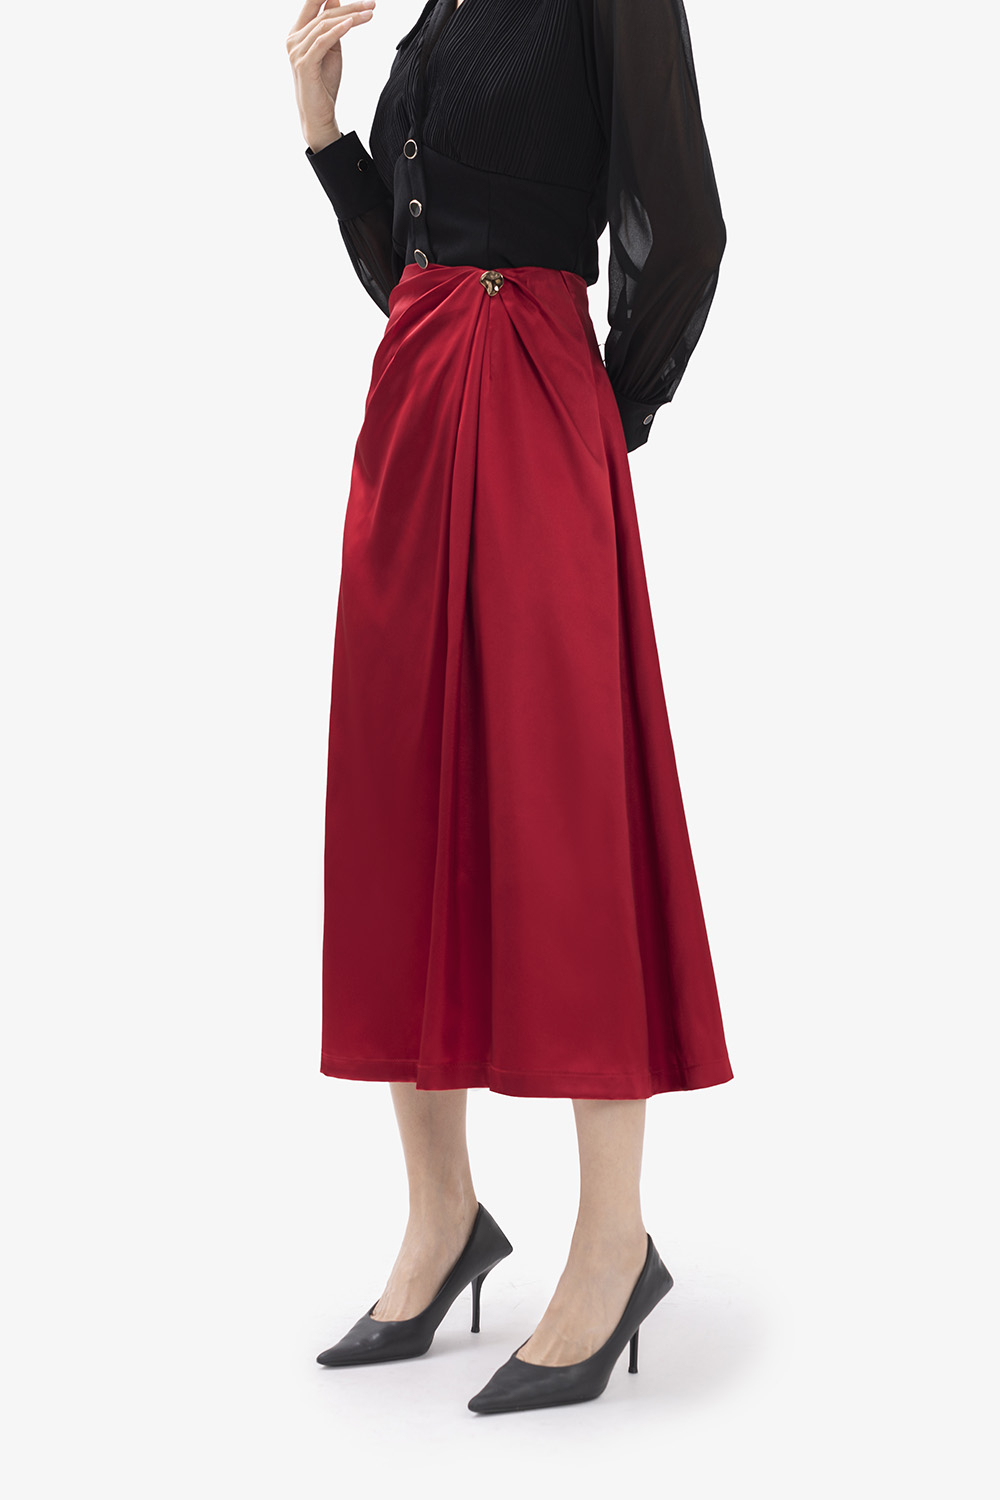 Đầm xòe kiểu hai dây chân váy xếp ly (Đỏ) | AlvinStore.Vn